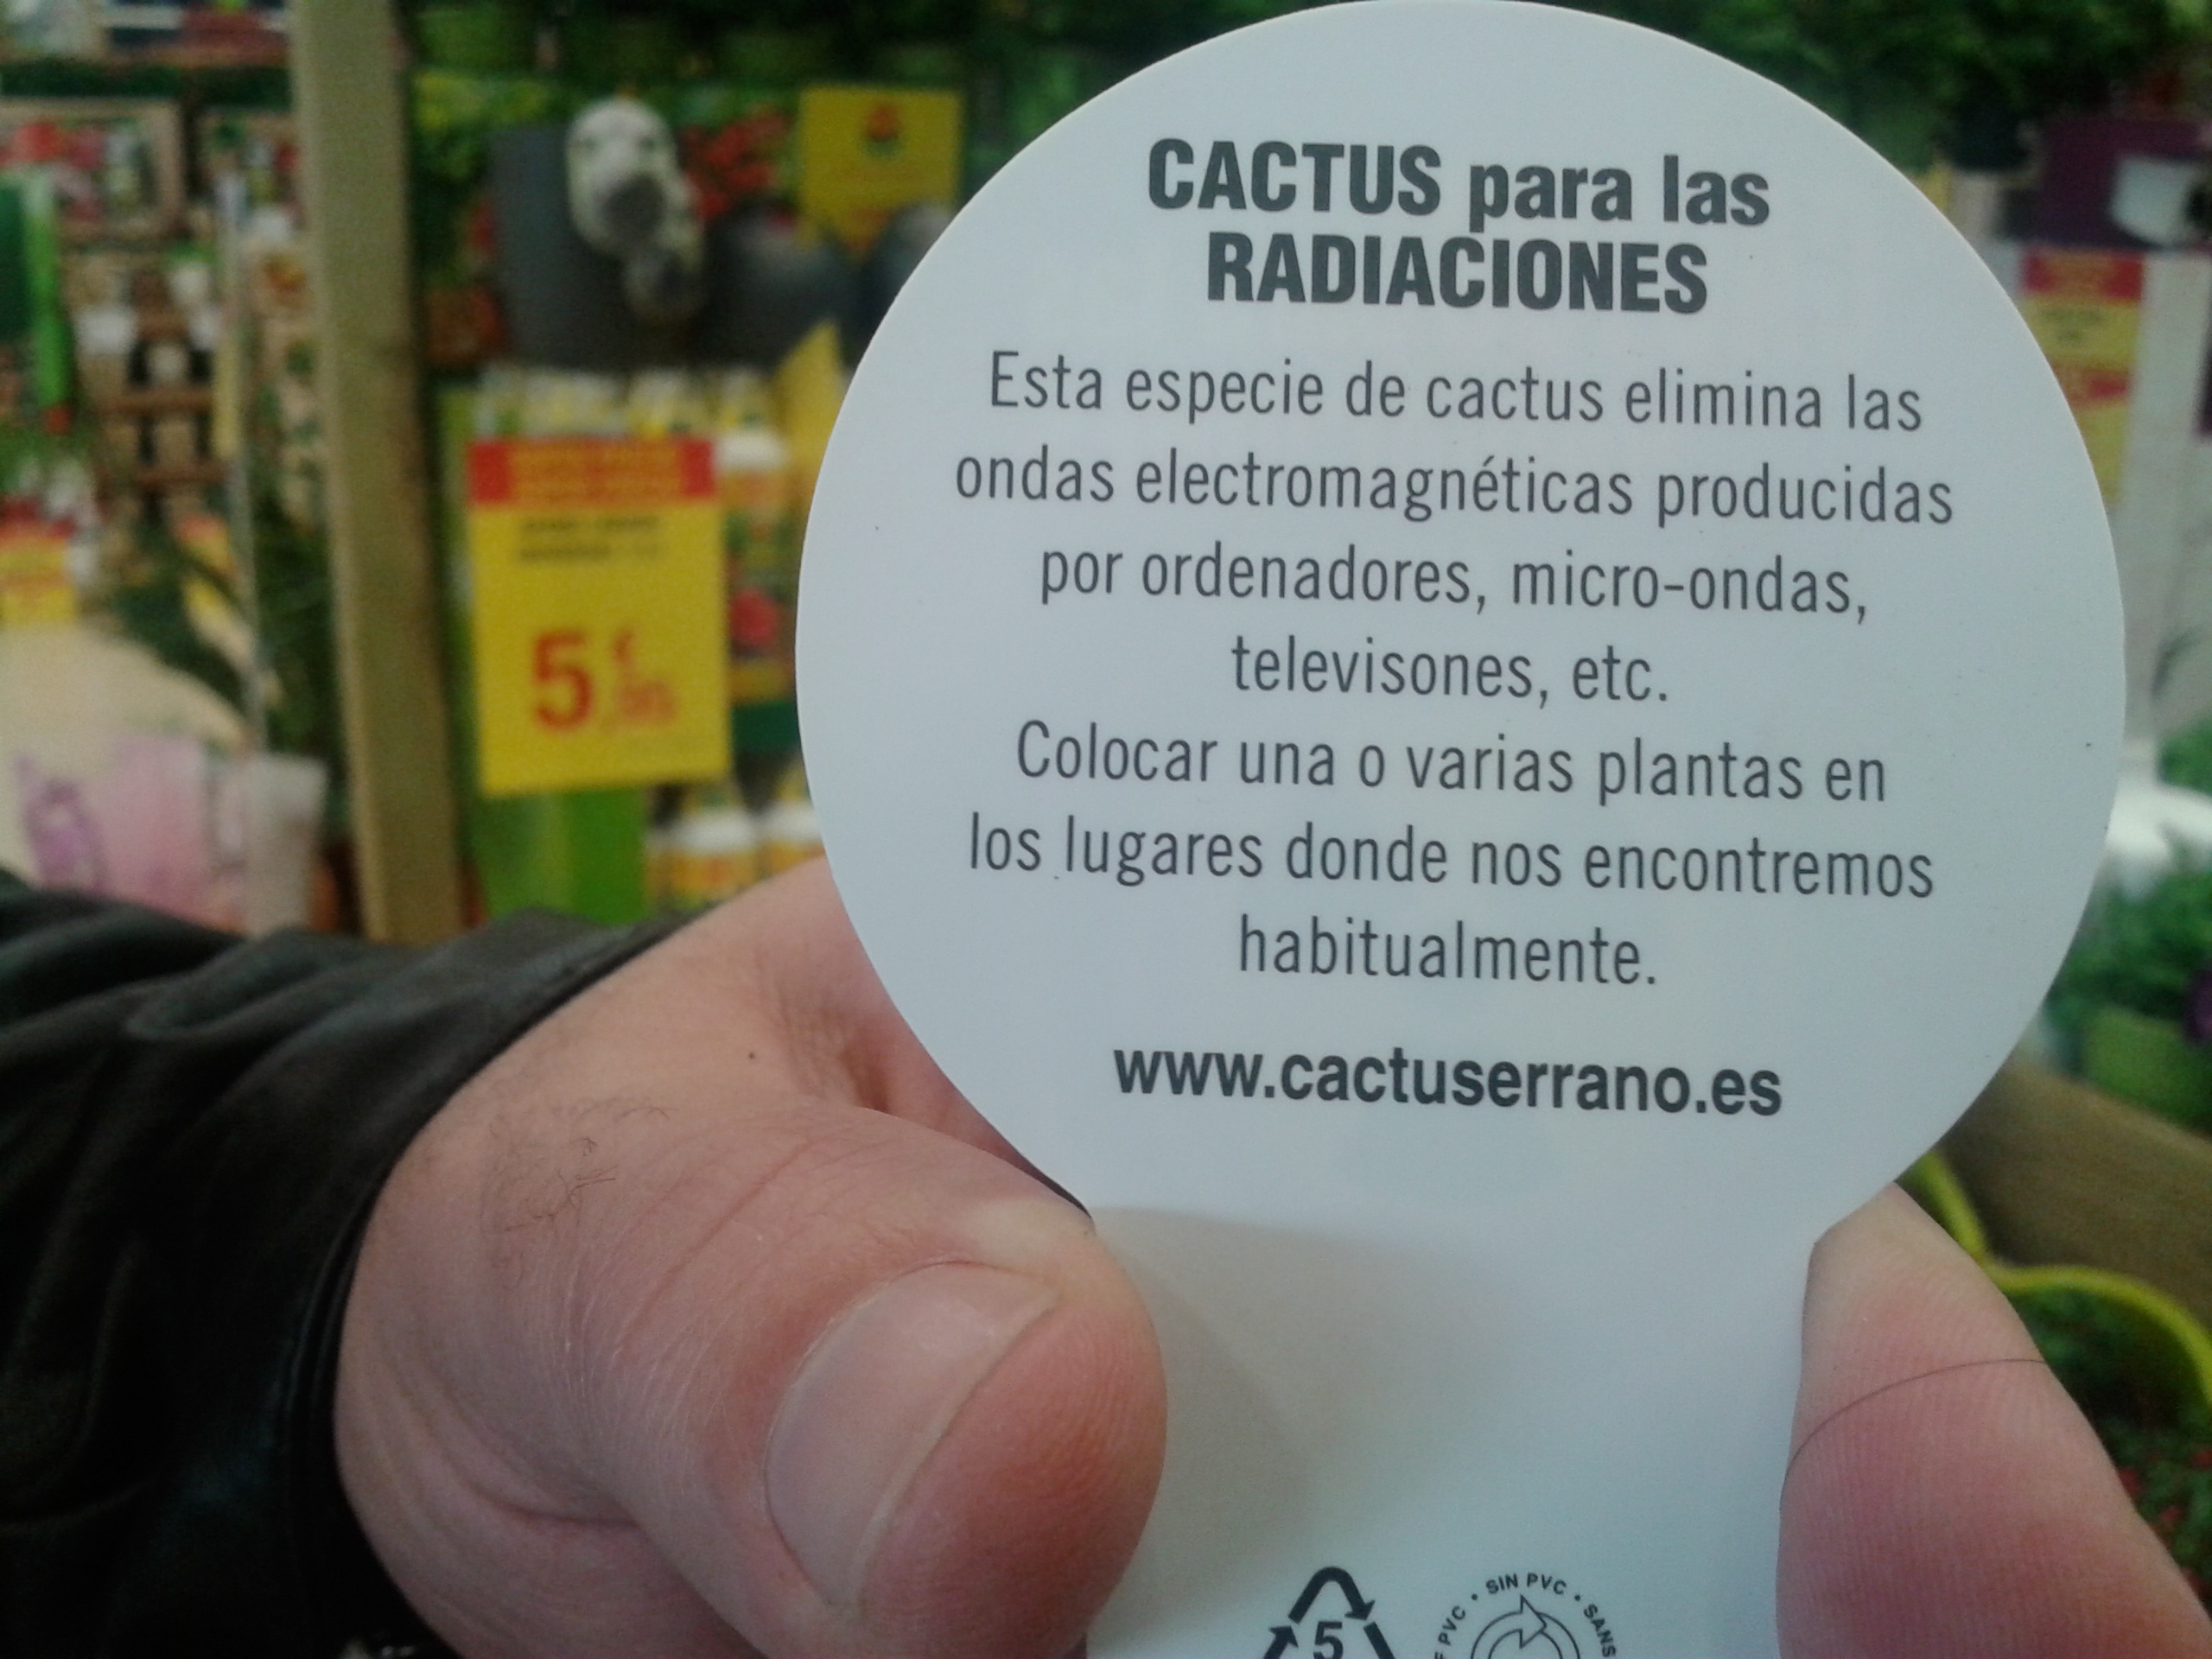 cactus_radiaciones_03032017.jpg